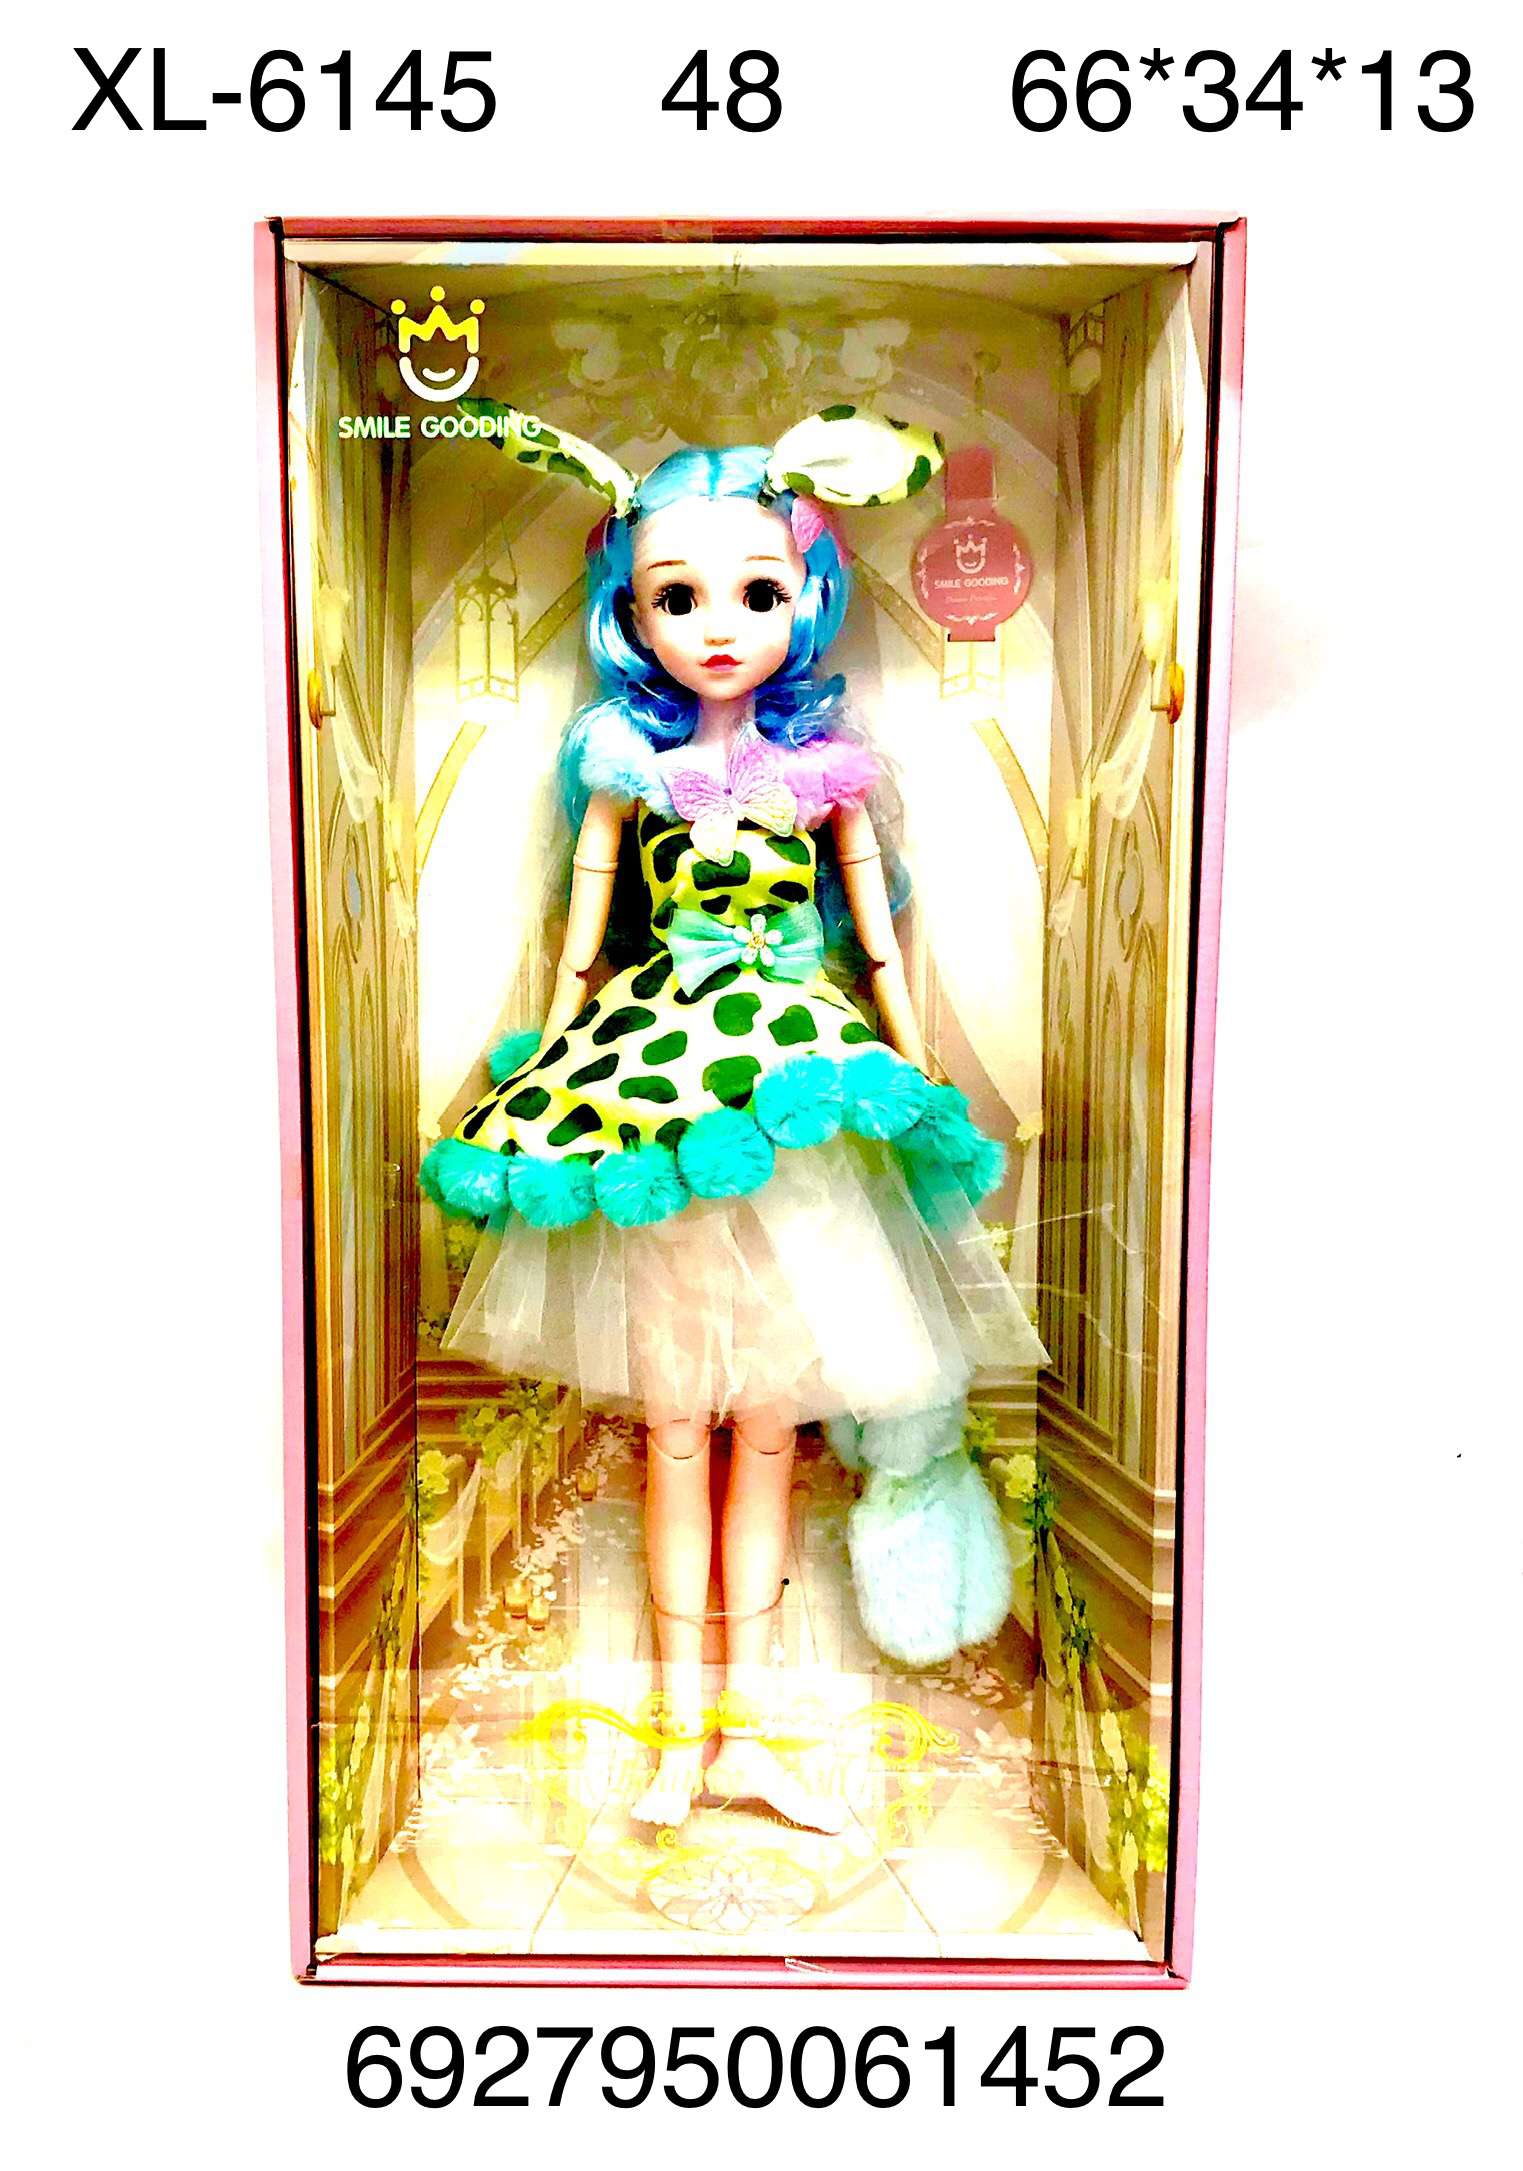 Кукла XL-6145 Smile - Омск 